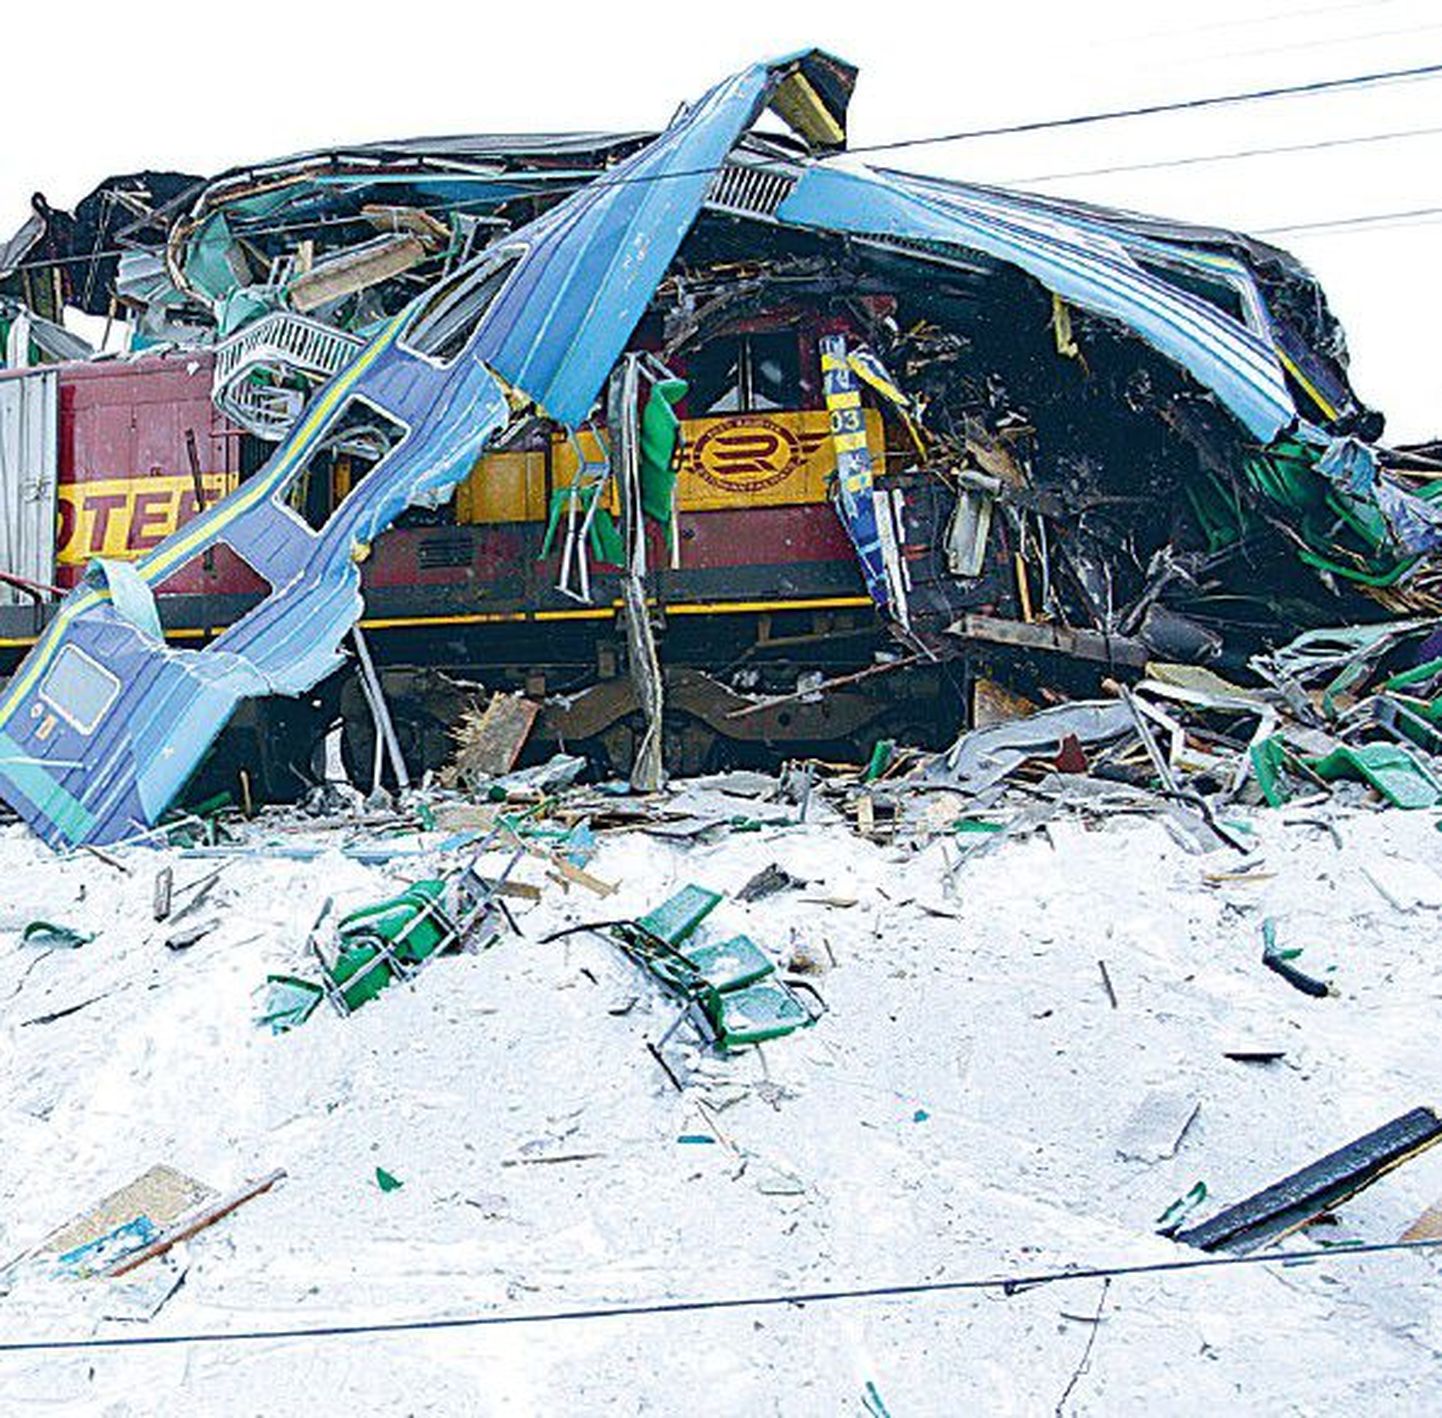 В четверг под Аэгвийду в Харьюмаа столкнулись товарный поезд и электричка.